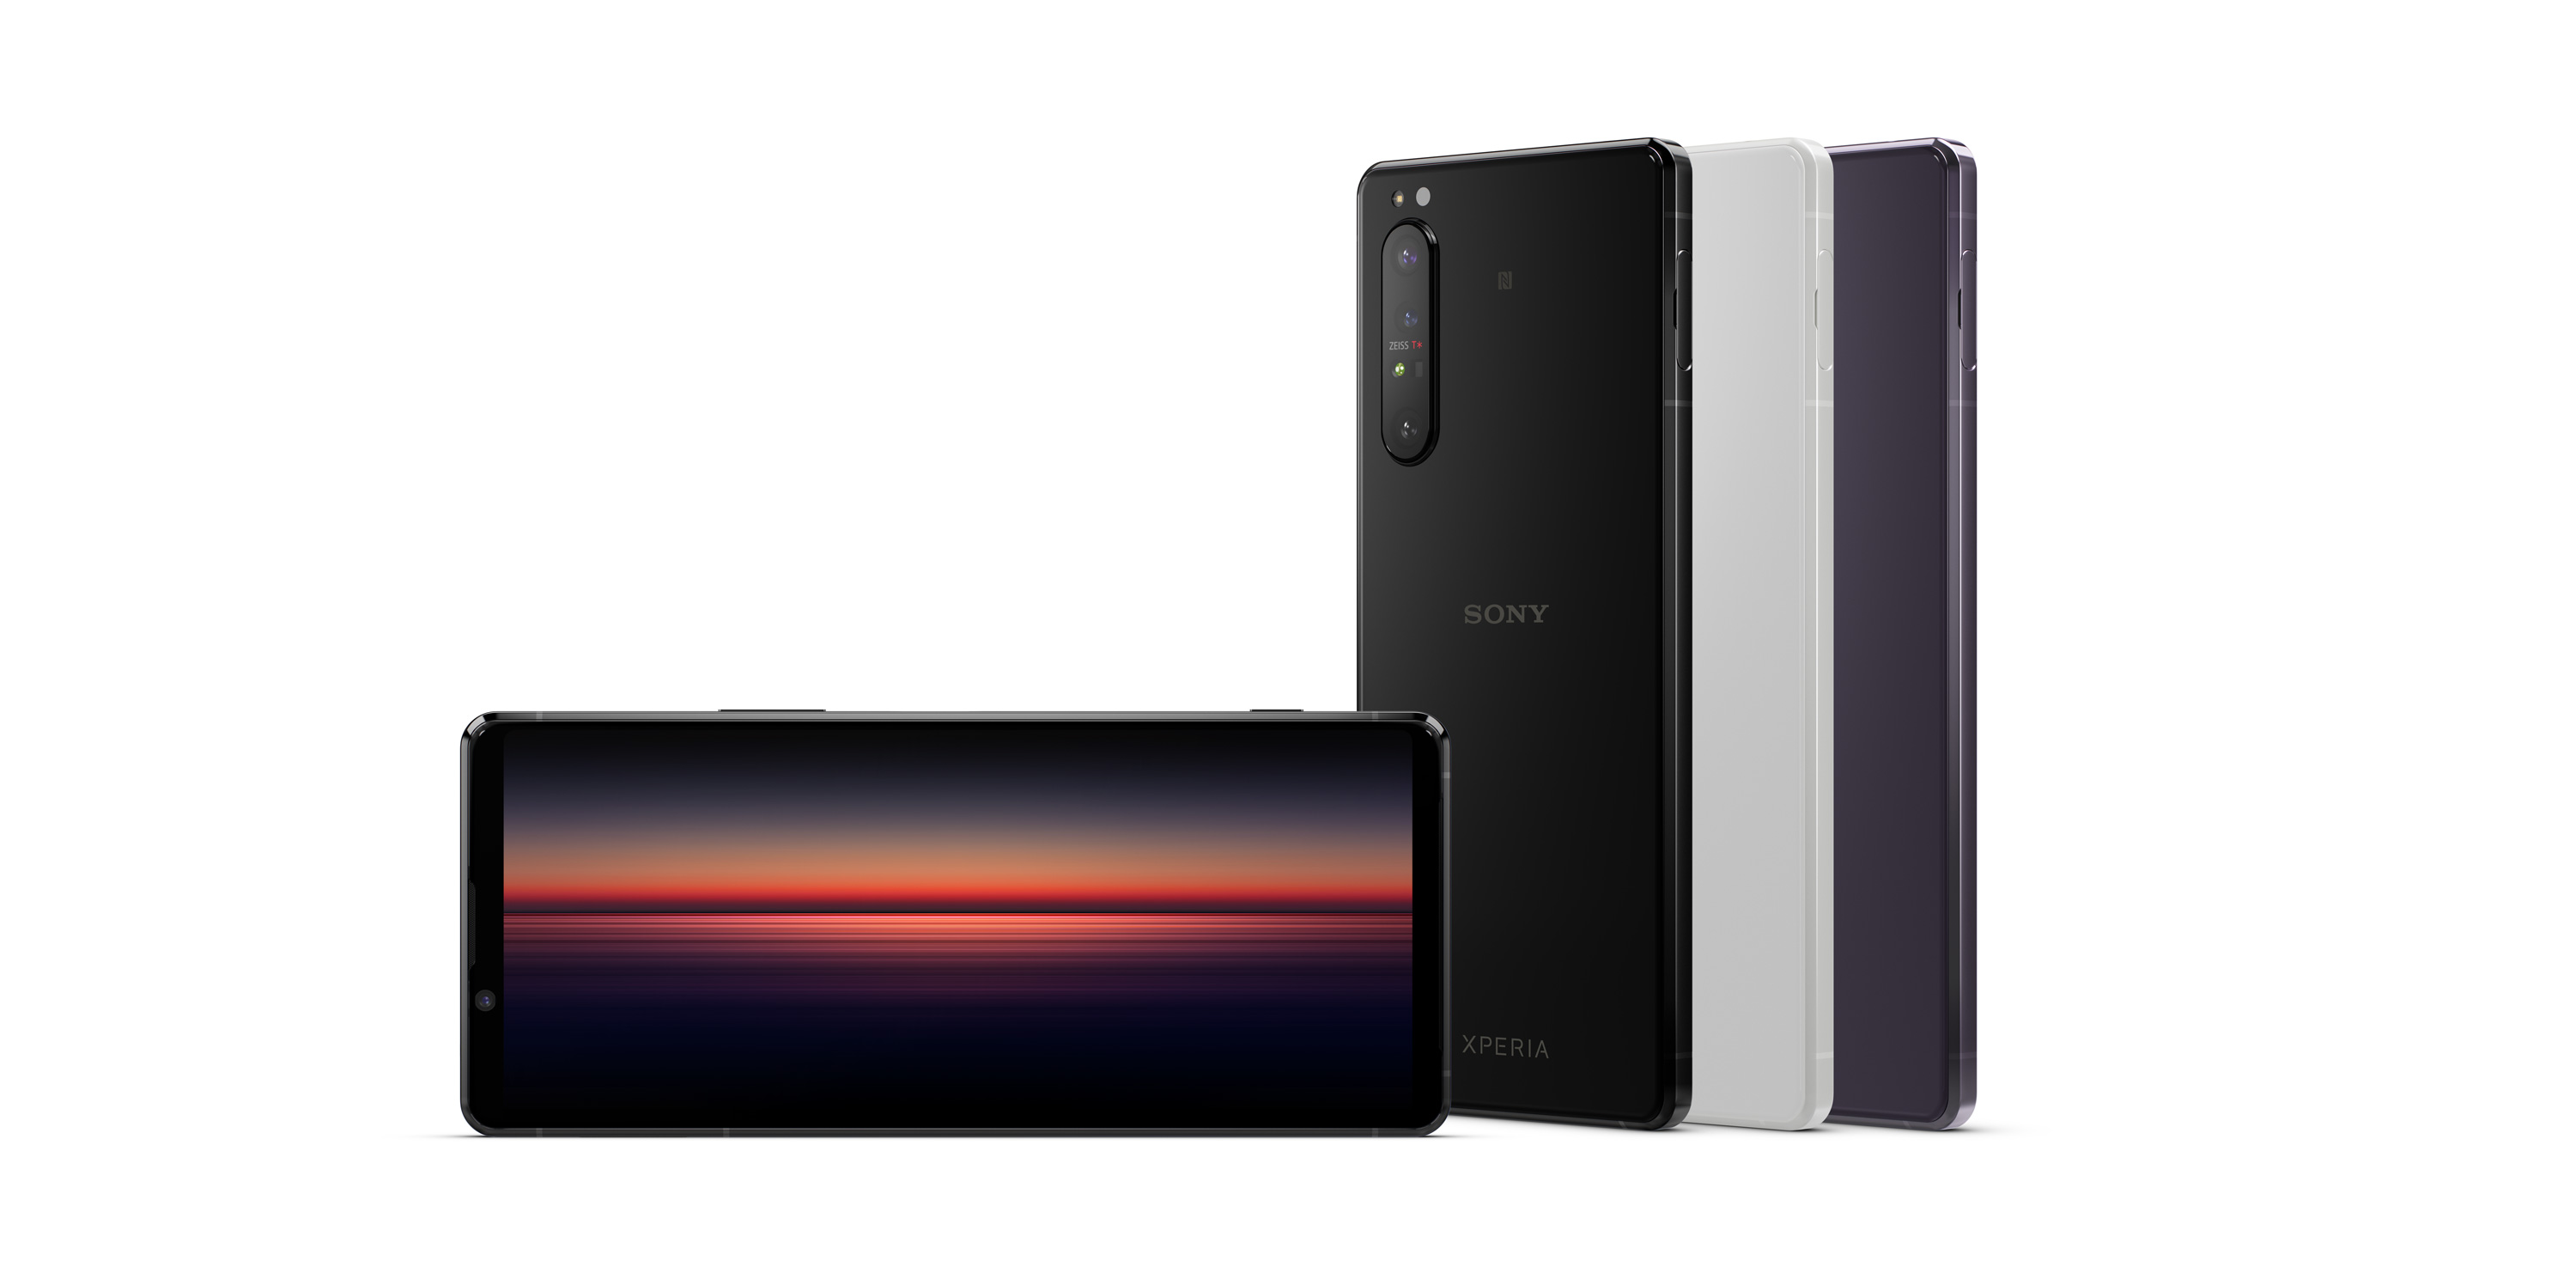 Sony Mobile Xperia 1 Ii 智慧型手機 紫 Sony 台灣官方購物網站 Sony Store Online Taiwan